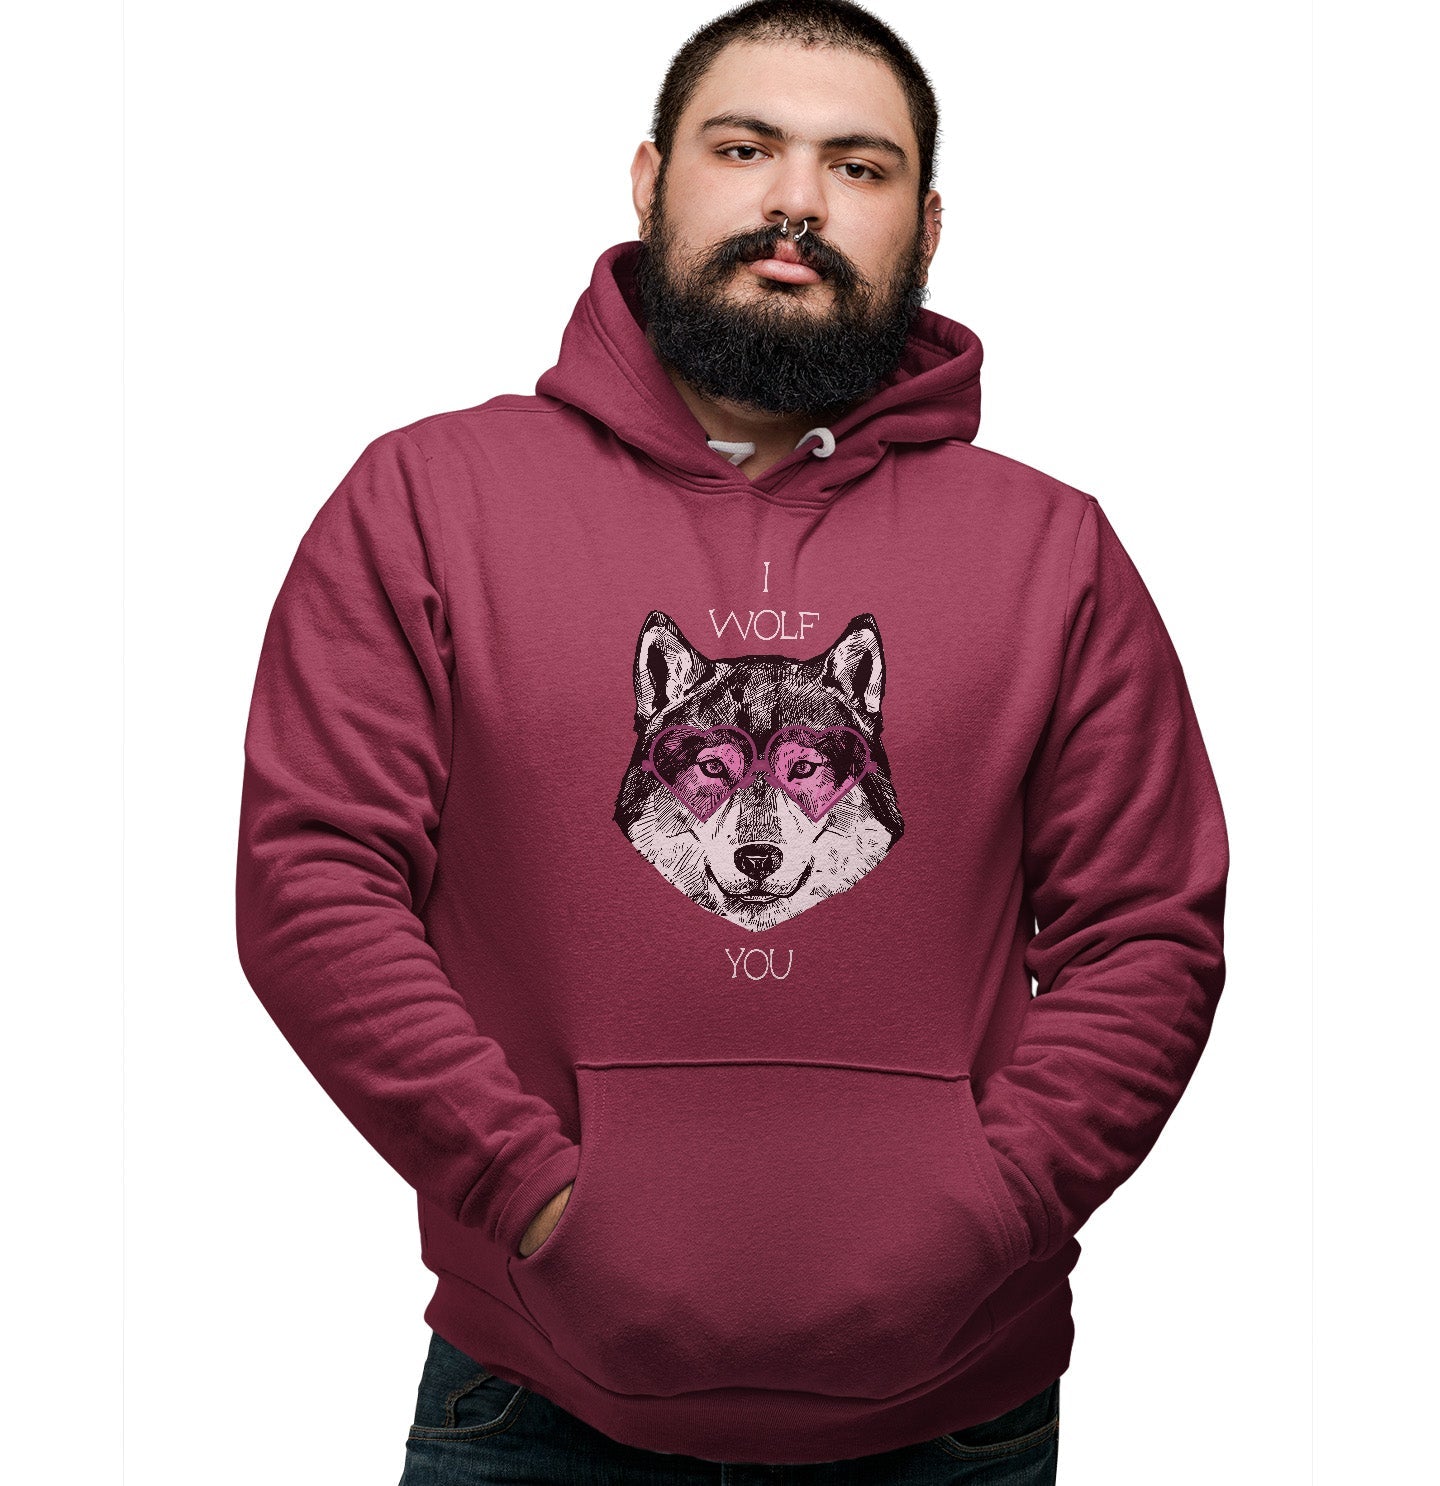 Animal Pride - I Wolf You - Adult Unisex Hoodie Sweatshirt